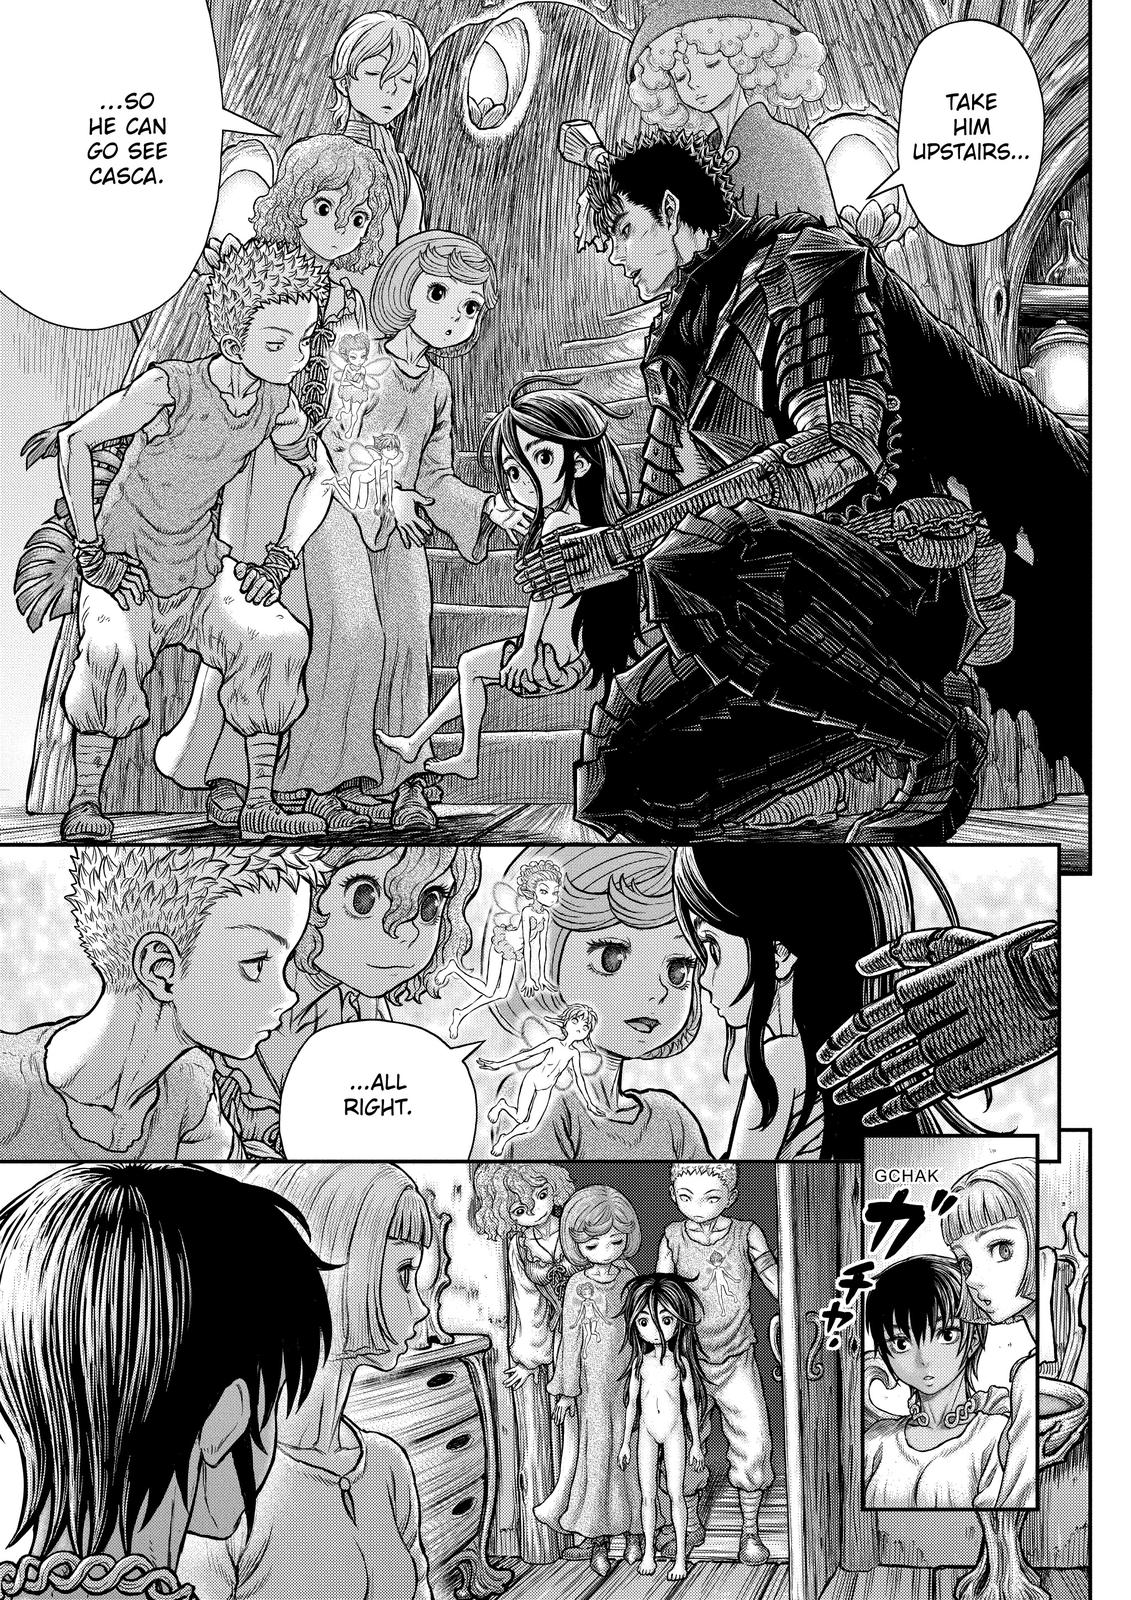 Berserk Manga Chapter 364 image 05